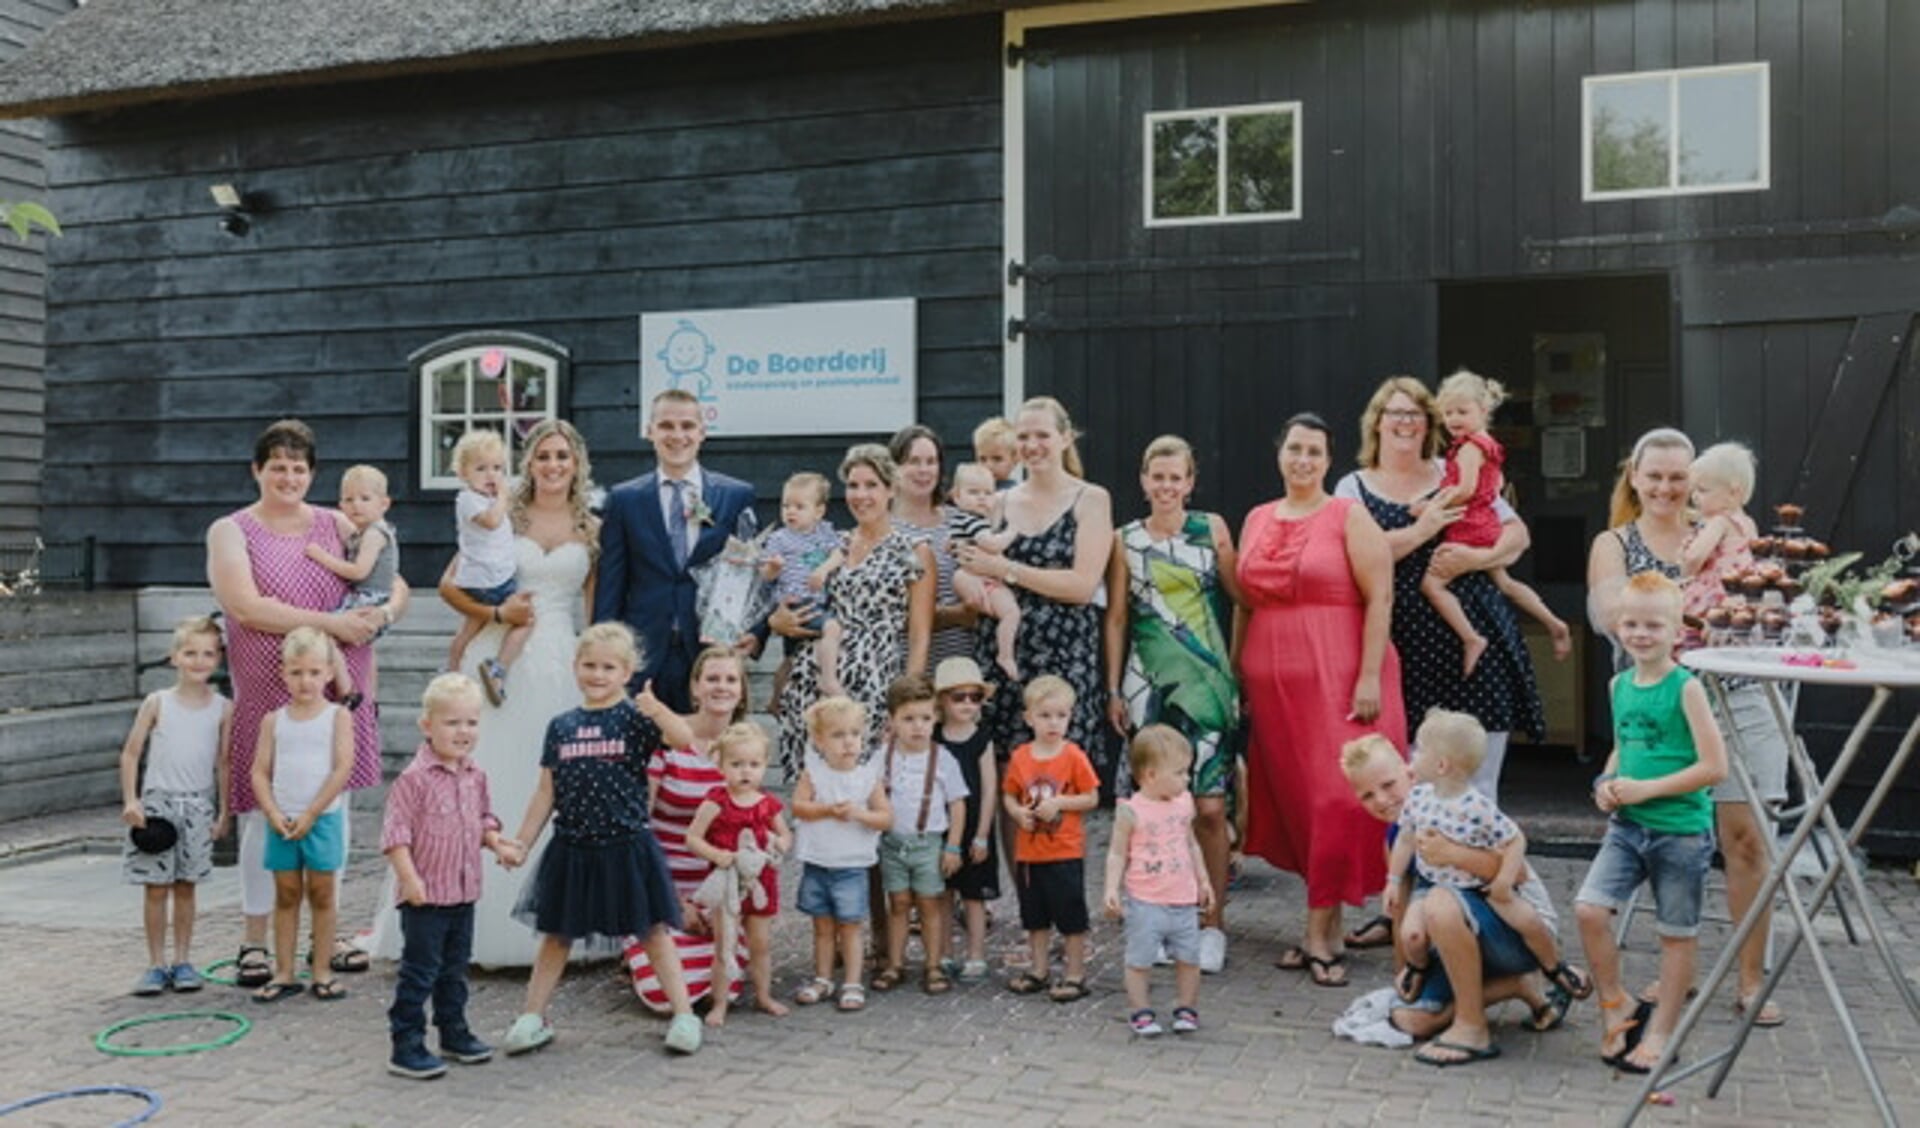 Juf Anouk trouwt en daarom is het feest bij De Boerderij in Bleskensgraaf.